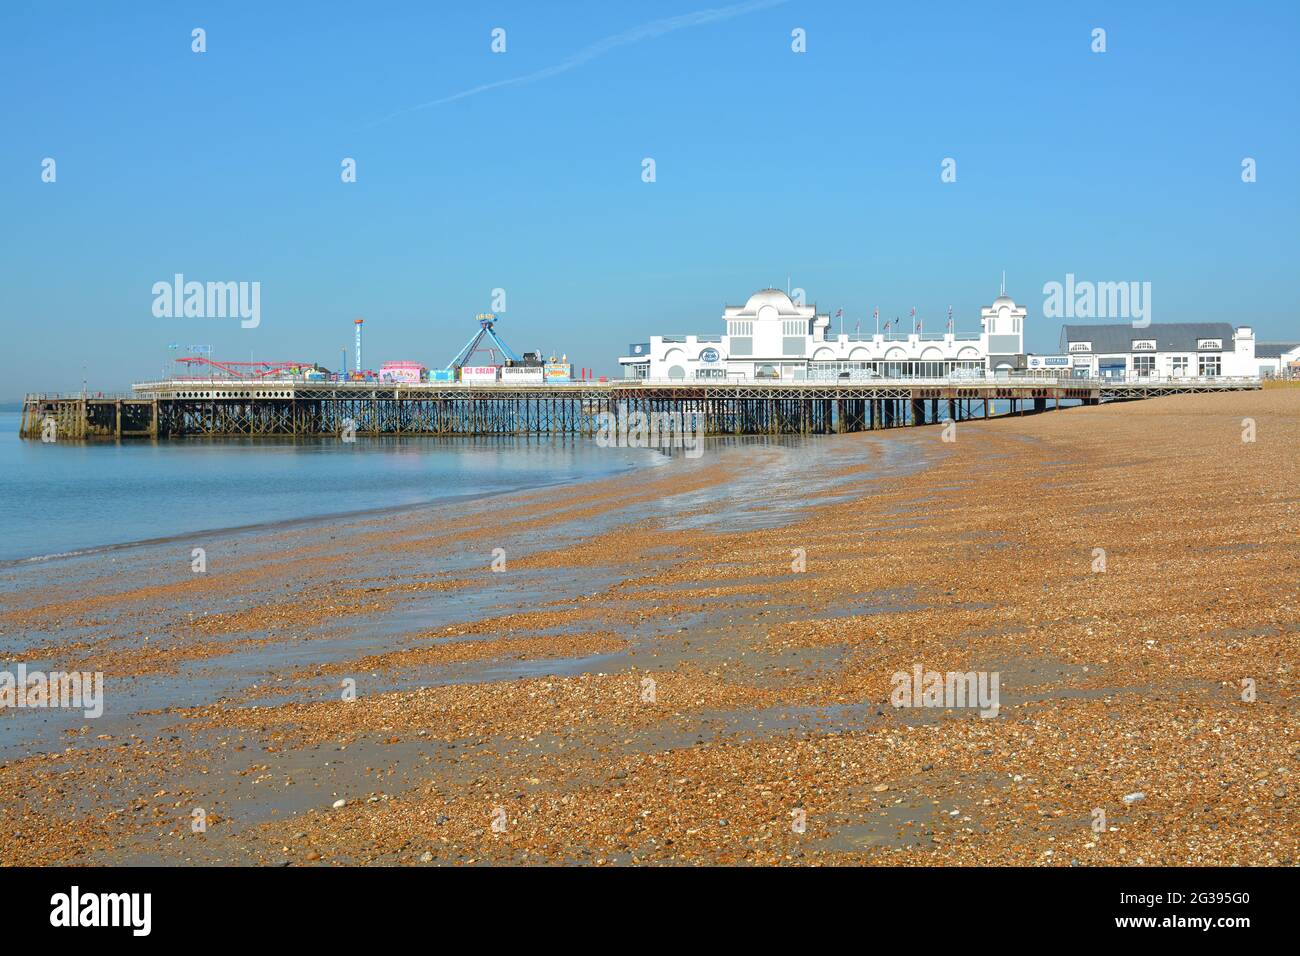 Immagine grandangolare della mattina presto del South Parade Pier di Portsmouth sul lungomare con marea molto bassa. Foto Stock